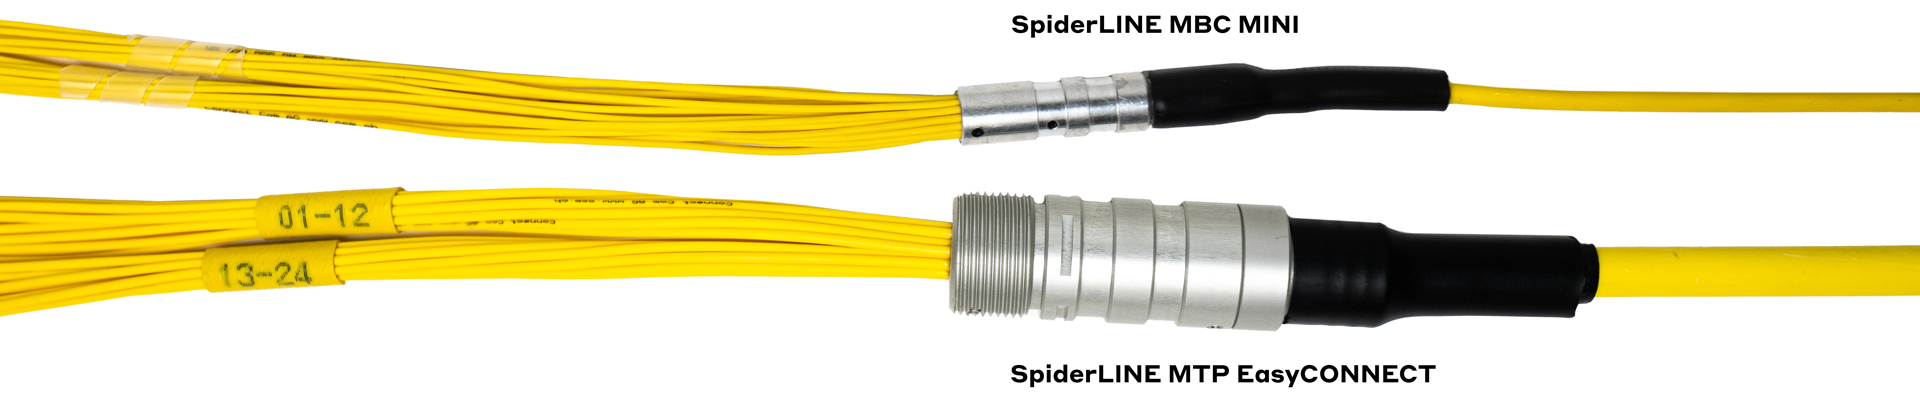 Comparaison des fouets Câble SpiderLINE